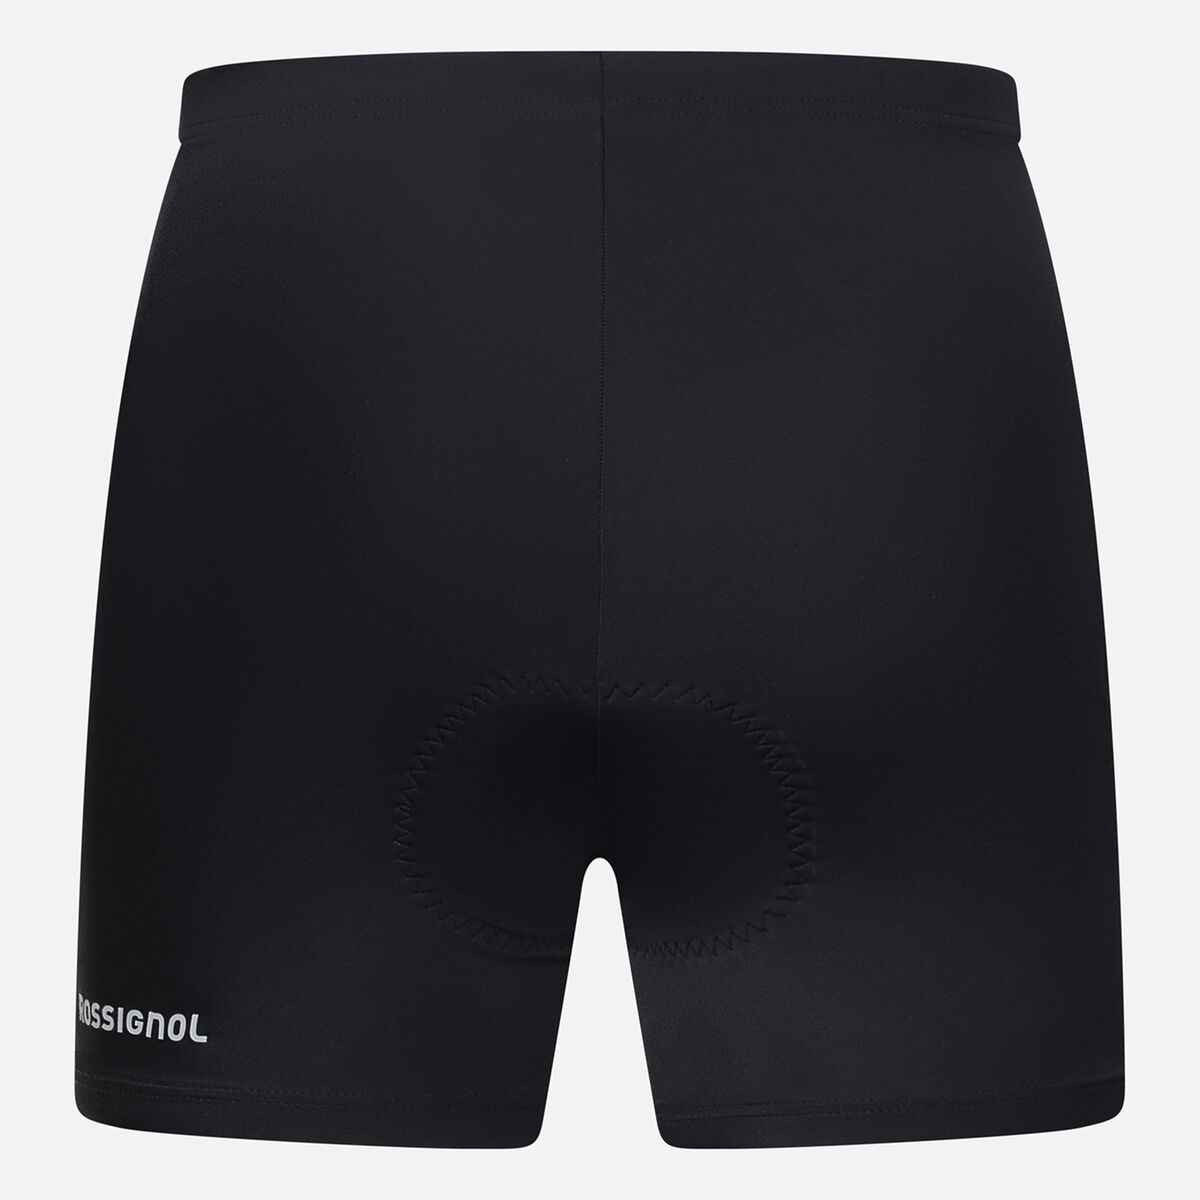 Men's Cycling Liner Shorts